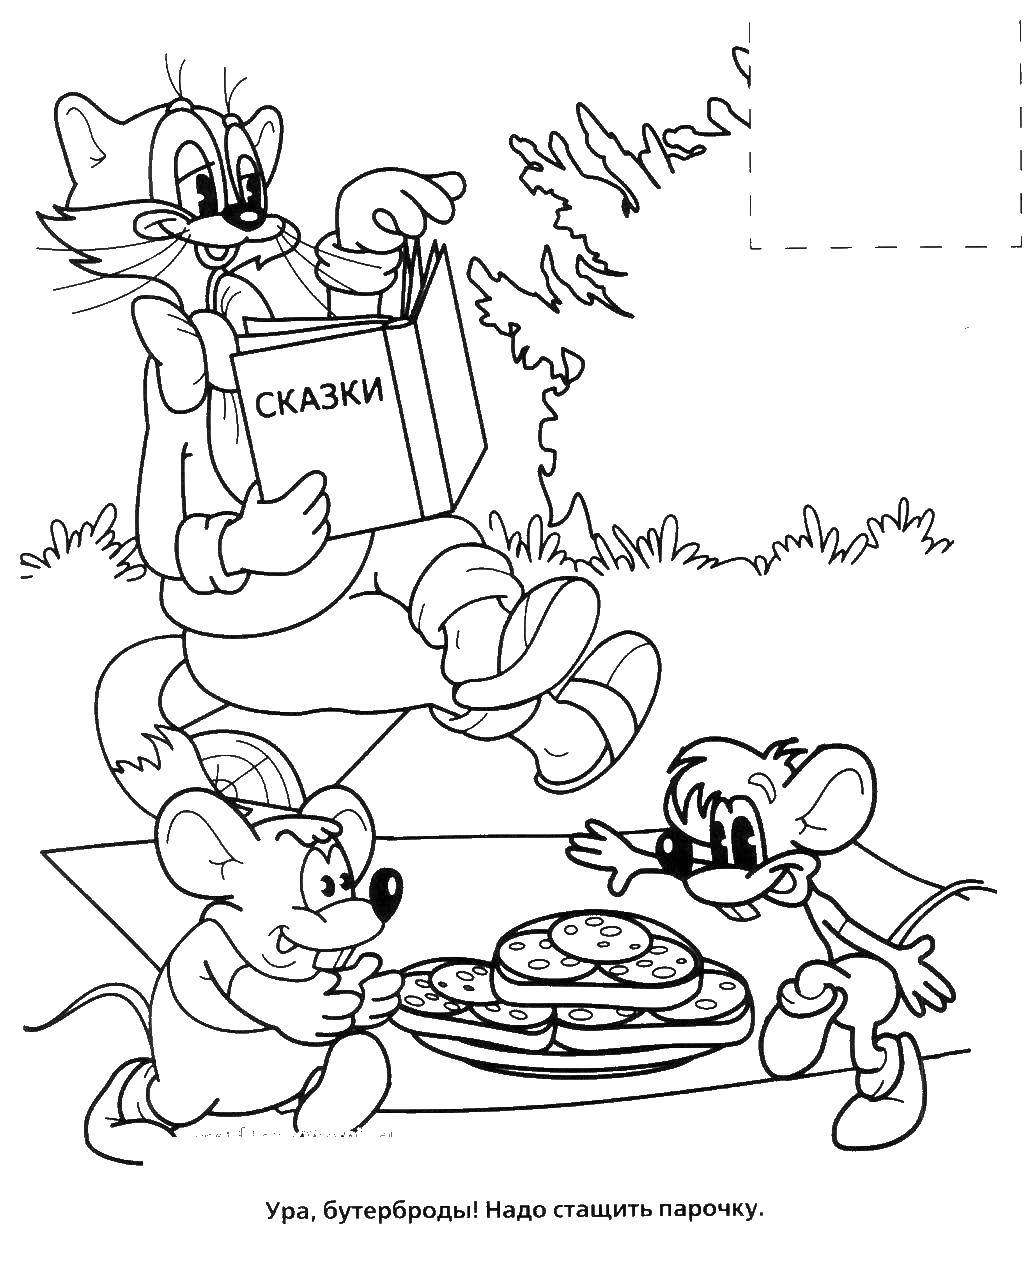  Кот леопольд и мыши на пикнике